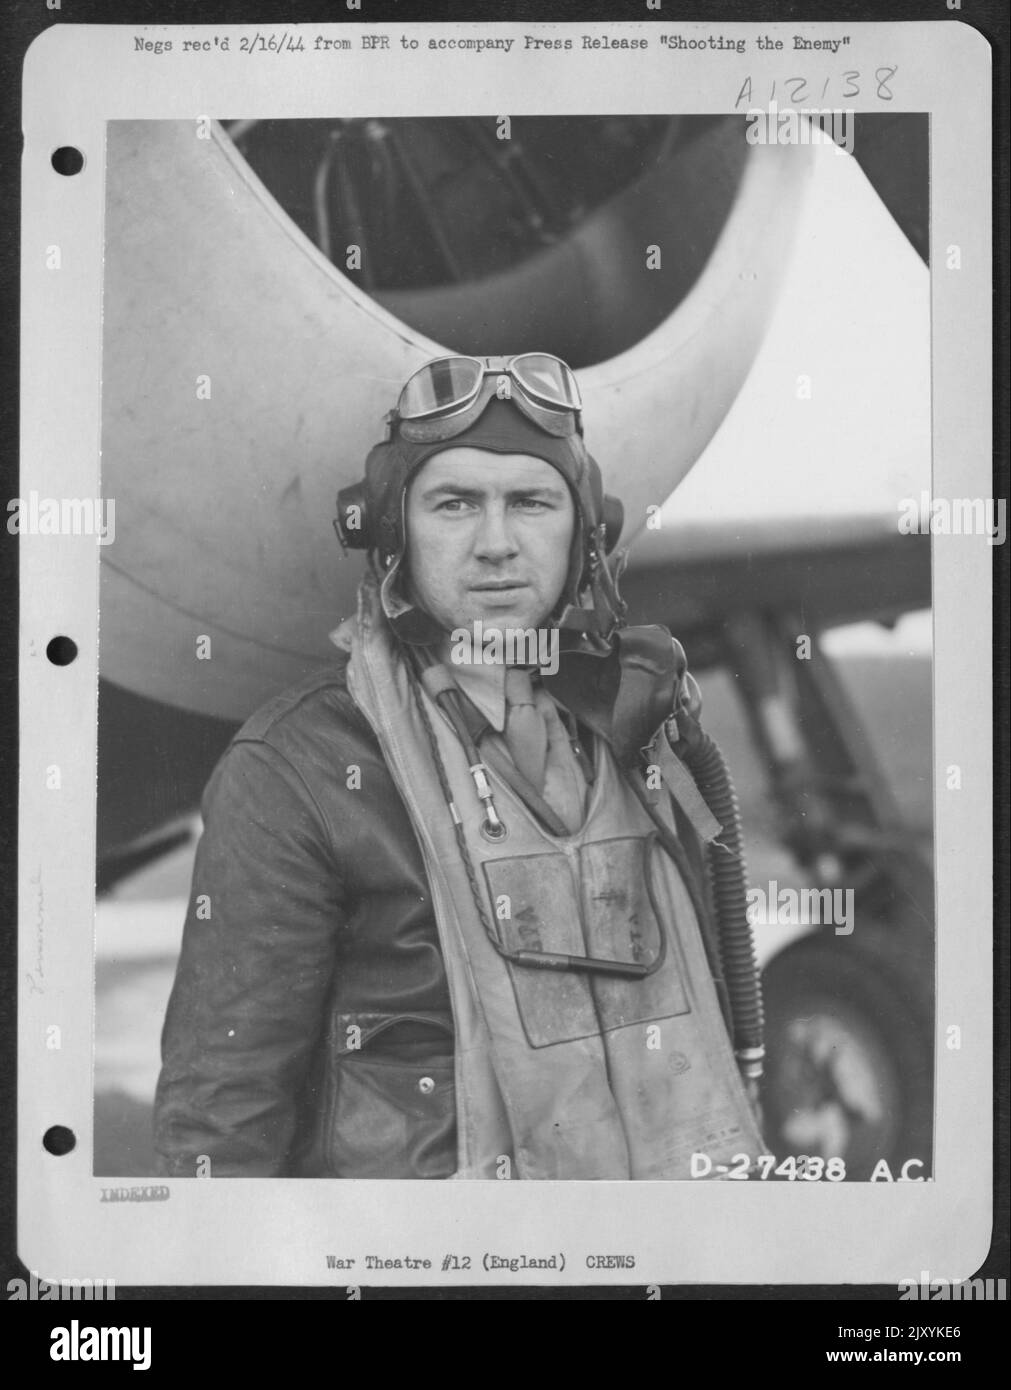 Leroy W. ISTA, Walcott, N.D., U.S. Army 8th Air Force, est un autre membre de l'Armée de l'Air de l'oncle Sam, est un autre membre des forces aériennes de l'Armée de l'Oncle Sam qui le rend difficile pour les «soldats nazis volant au-dessus de l'Europe occupée et de l'Allemagne. Banque D'Images